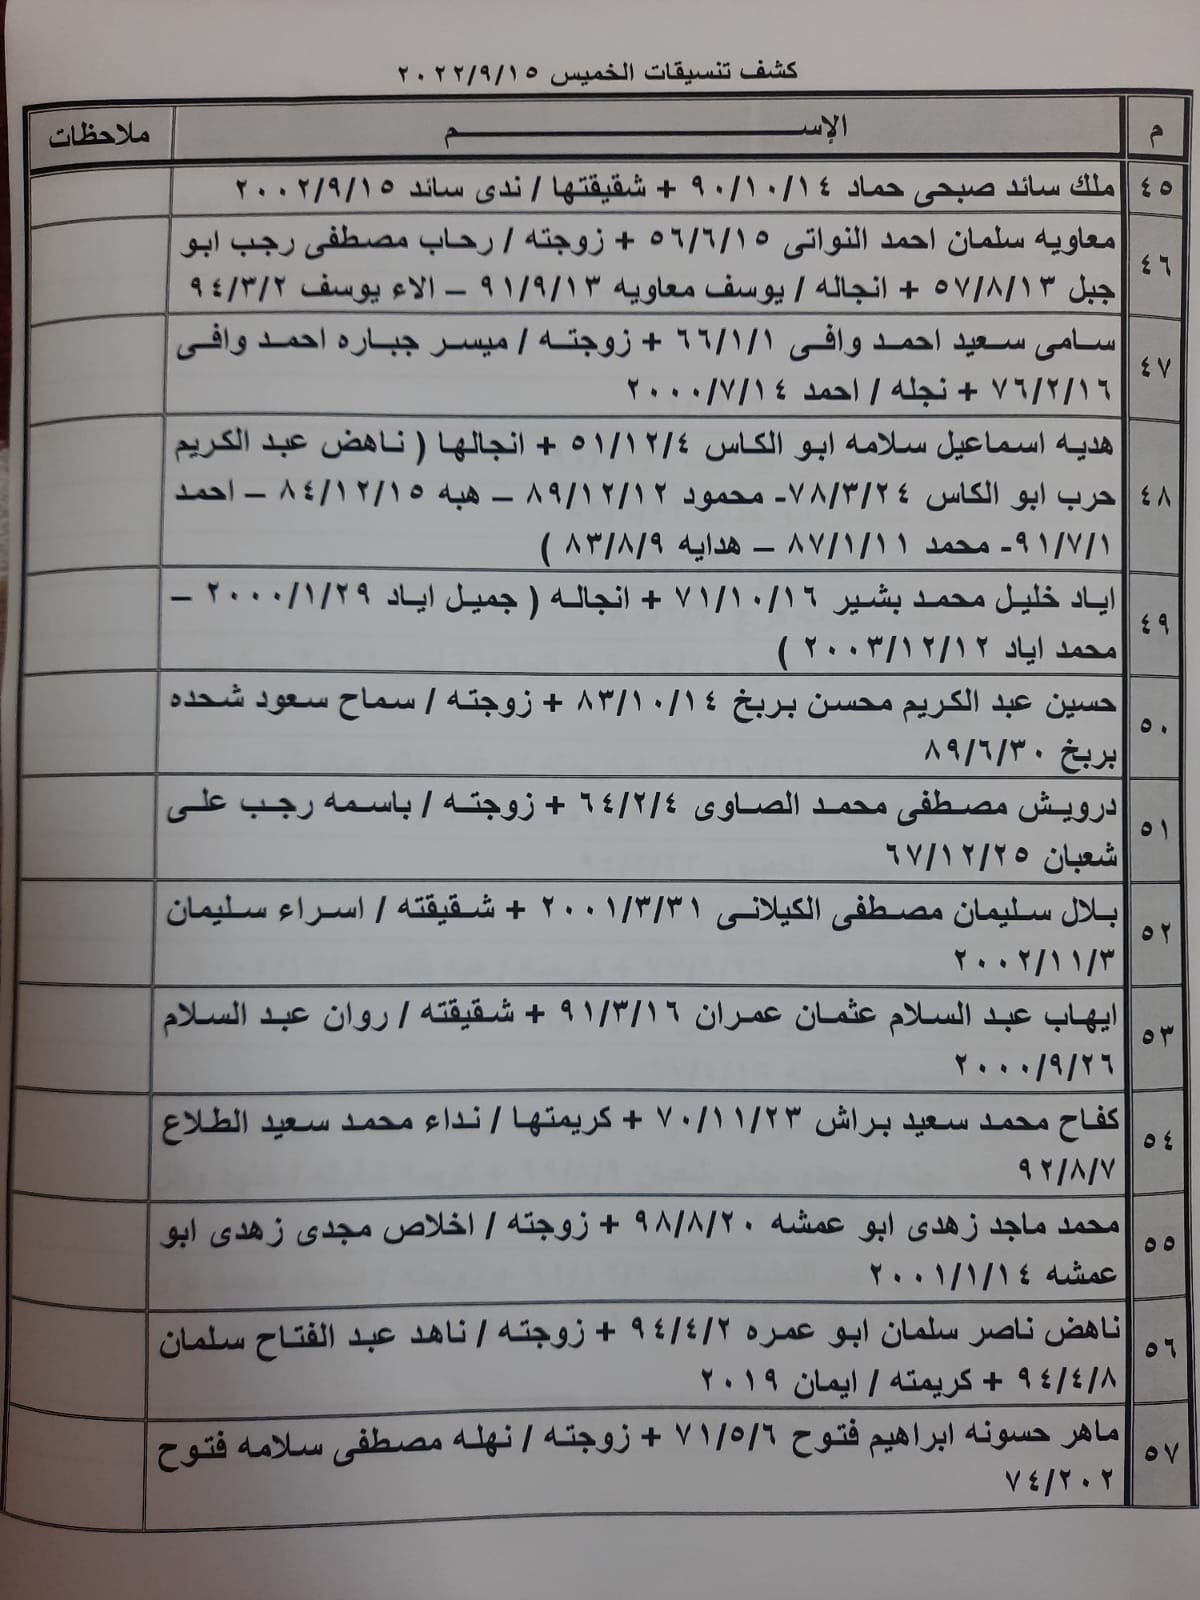 بالأسماء: كشف "التنسيقات المصرية" للسفر عبر معبر رفح الخميس 15 سبتمبر 2022